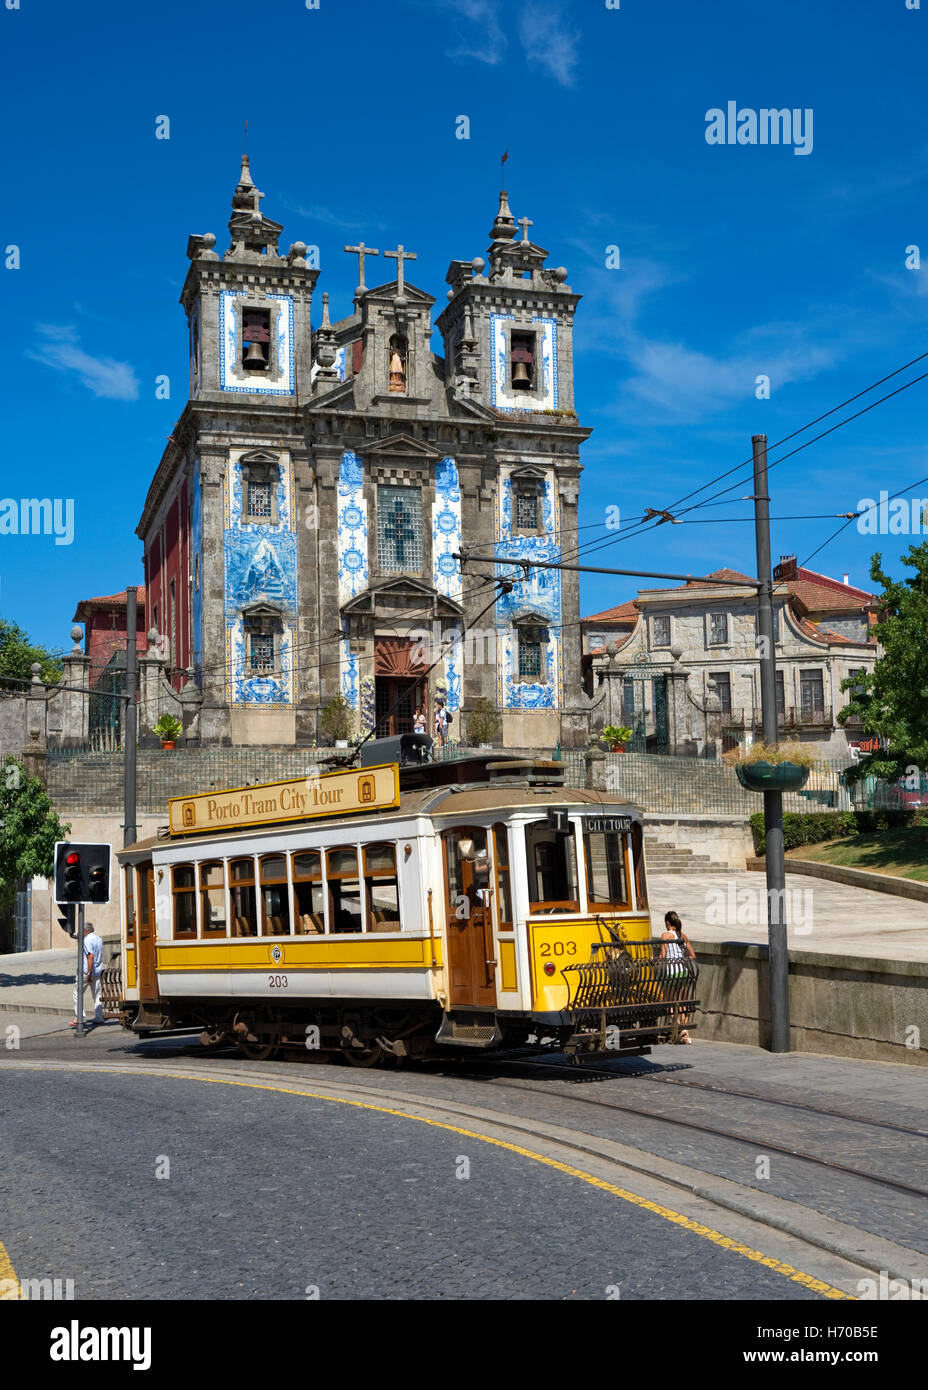 Portugal, Porto, Praca da Batalha, un tram touristique à l'extérieur de l'église Santo Ildefonso Banque D'Images